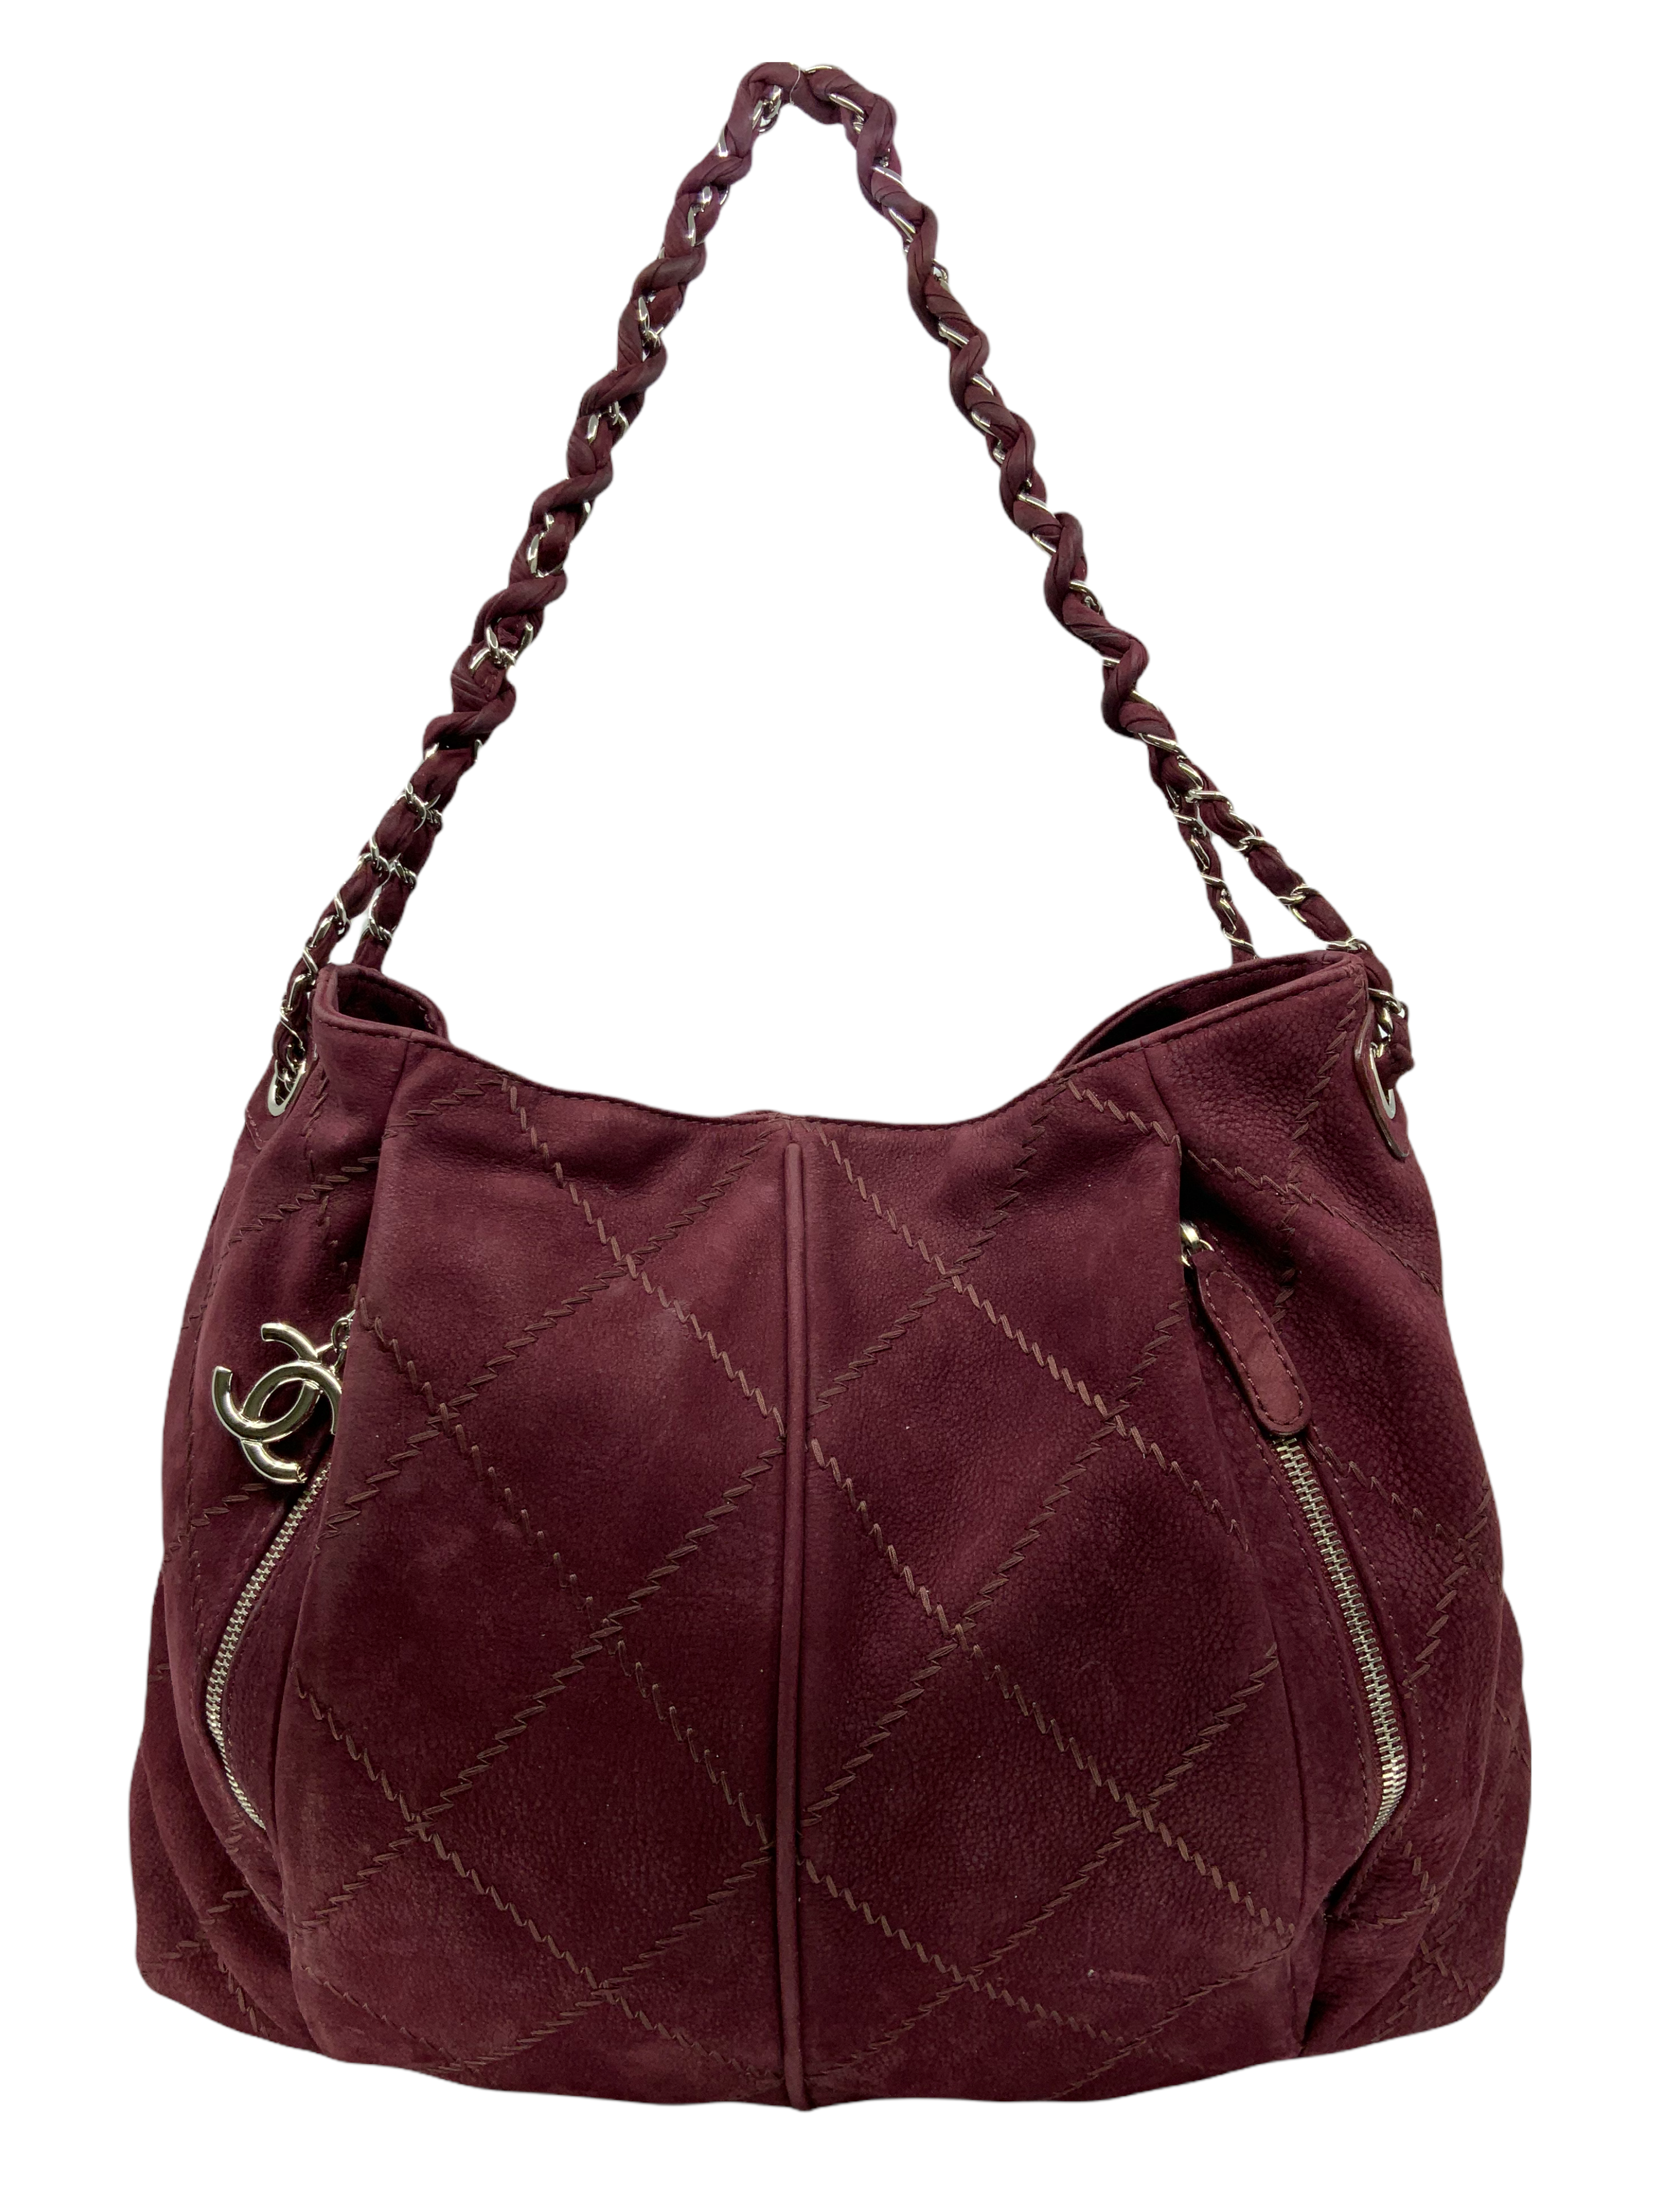 HealthdesignShops, Chanel Vintage Handbag 375885